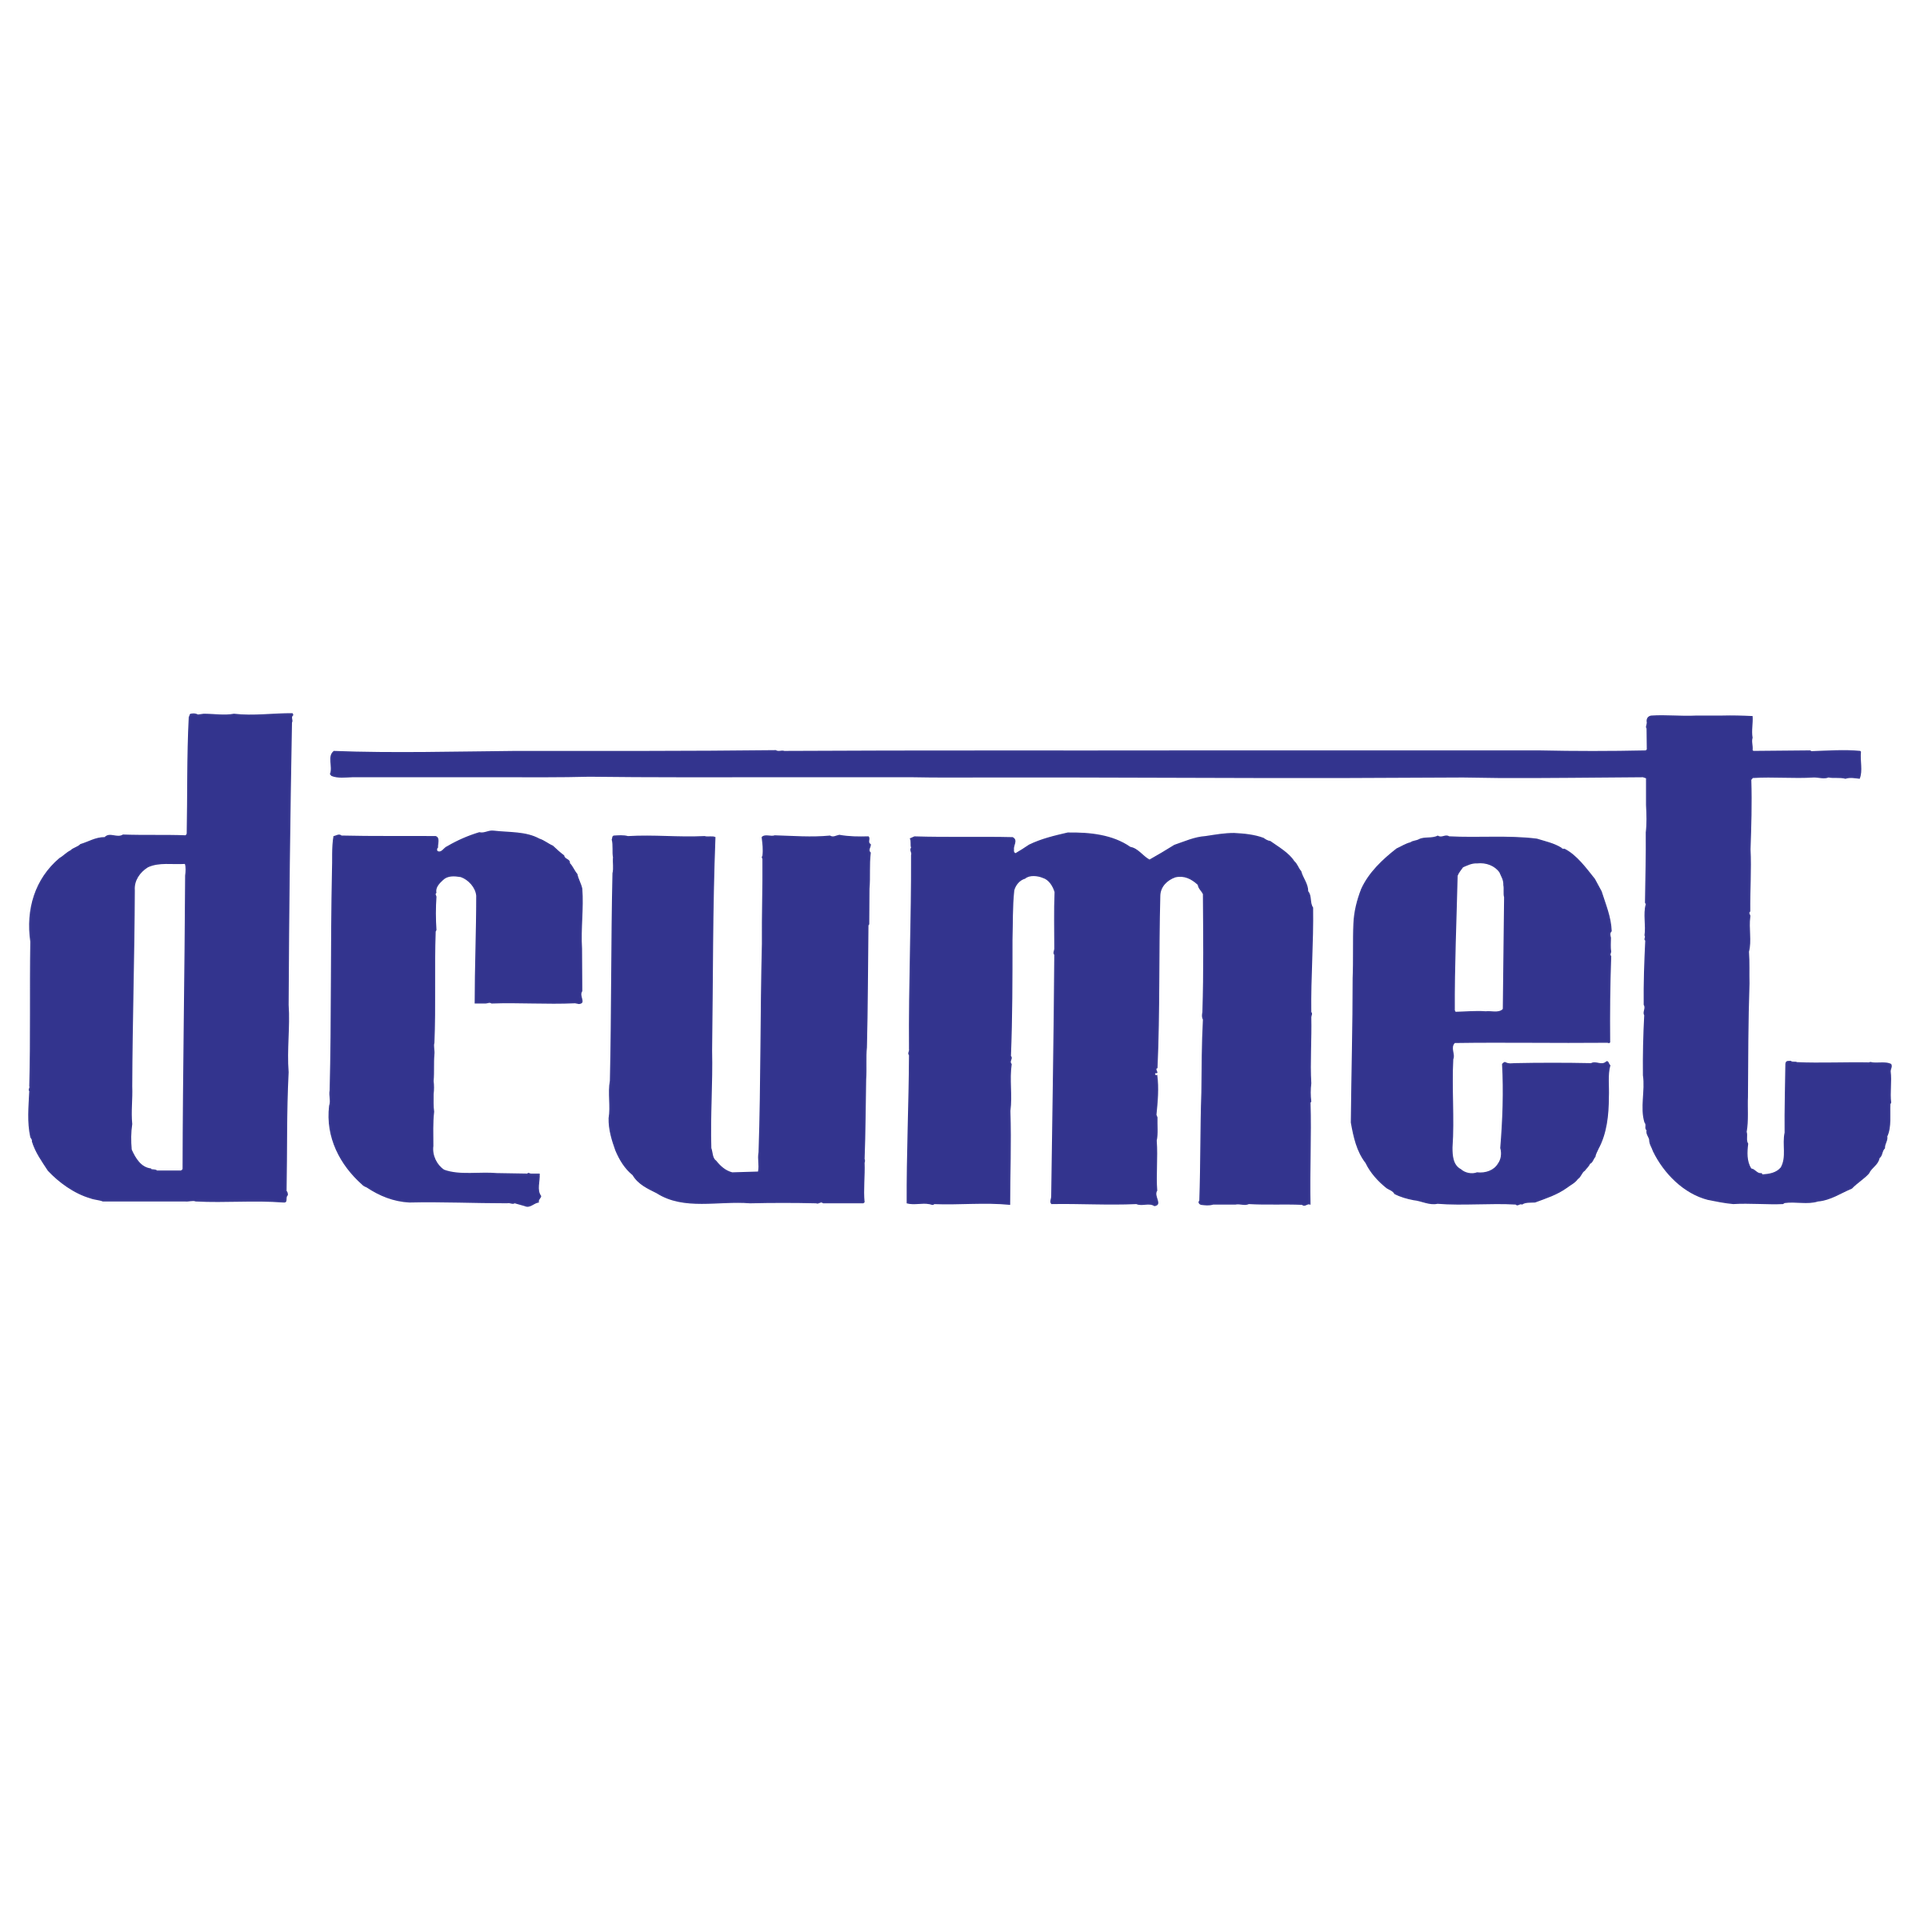 Zdjęcie przedstawia logo firmy Drumet